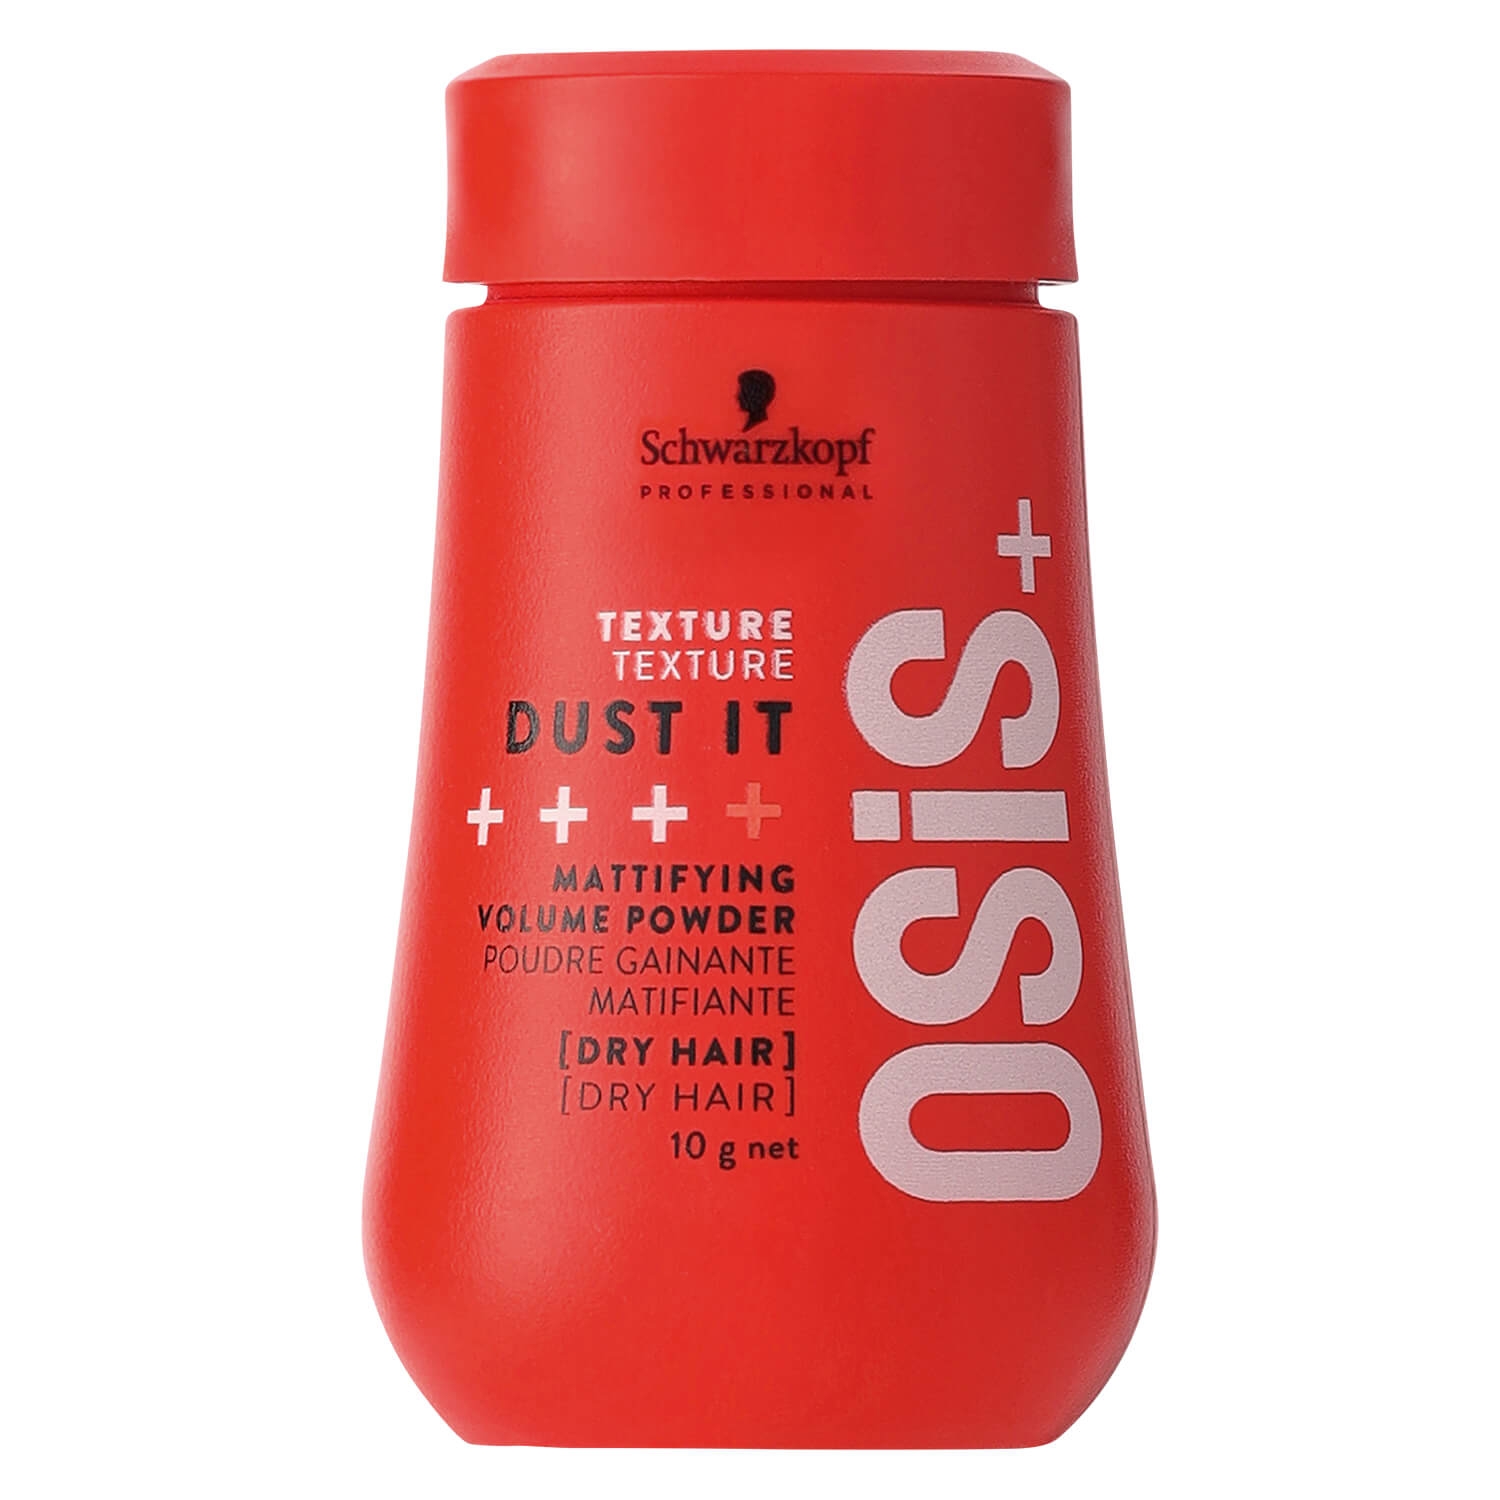 Produktbild von Osis - Dust it Mattifying Volume Powder